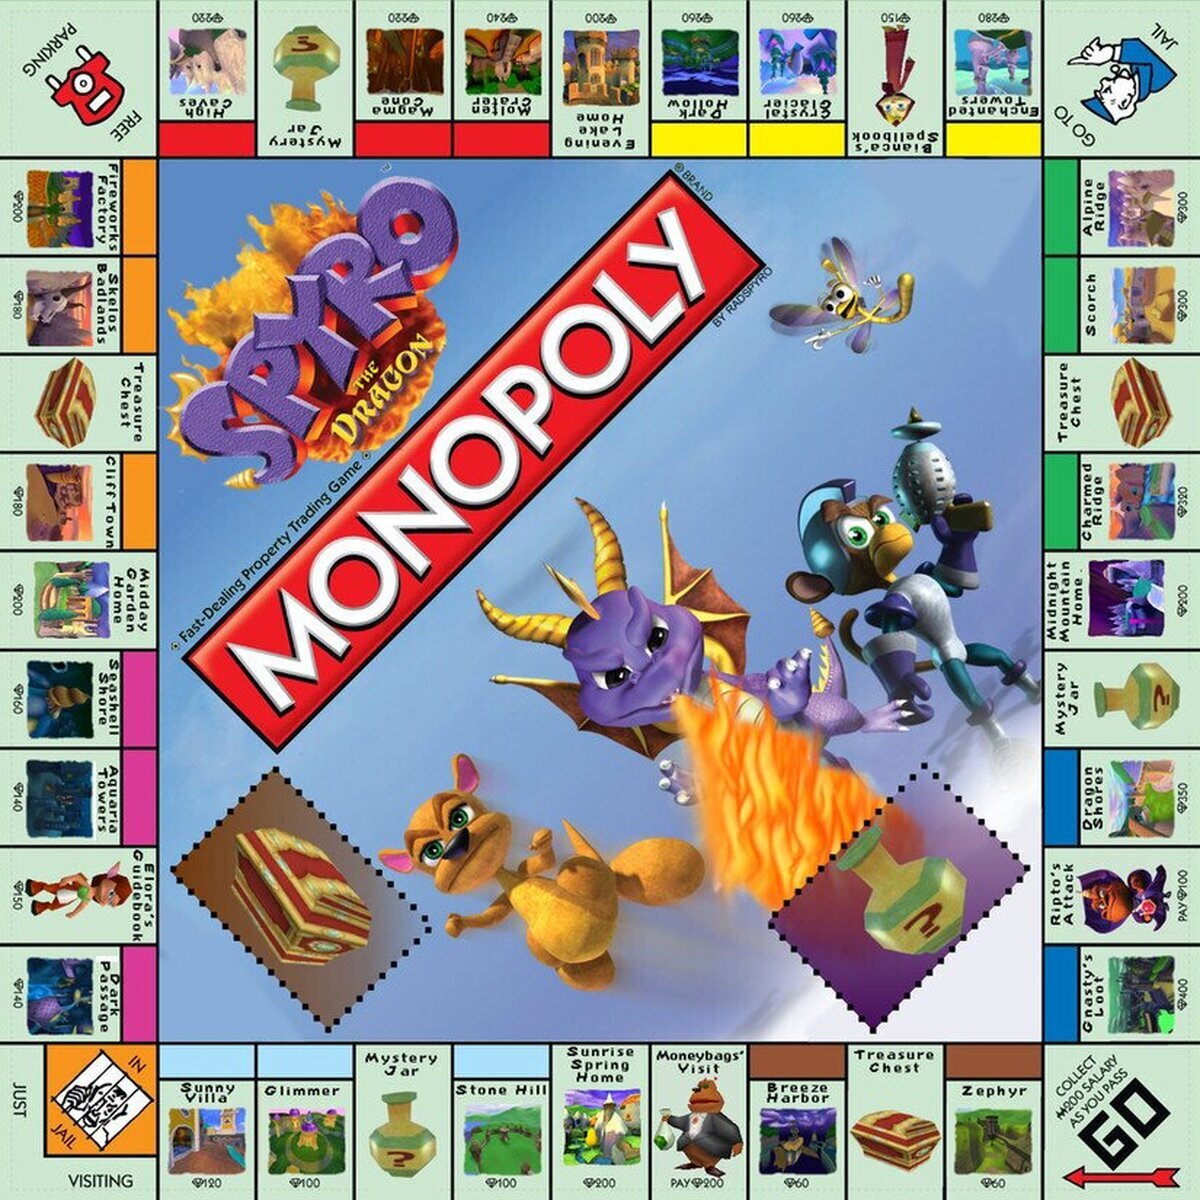 El único monopoly por el que pagaría